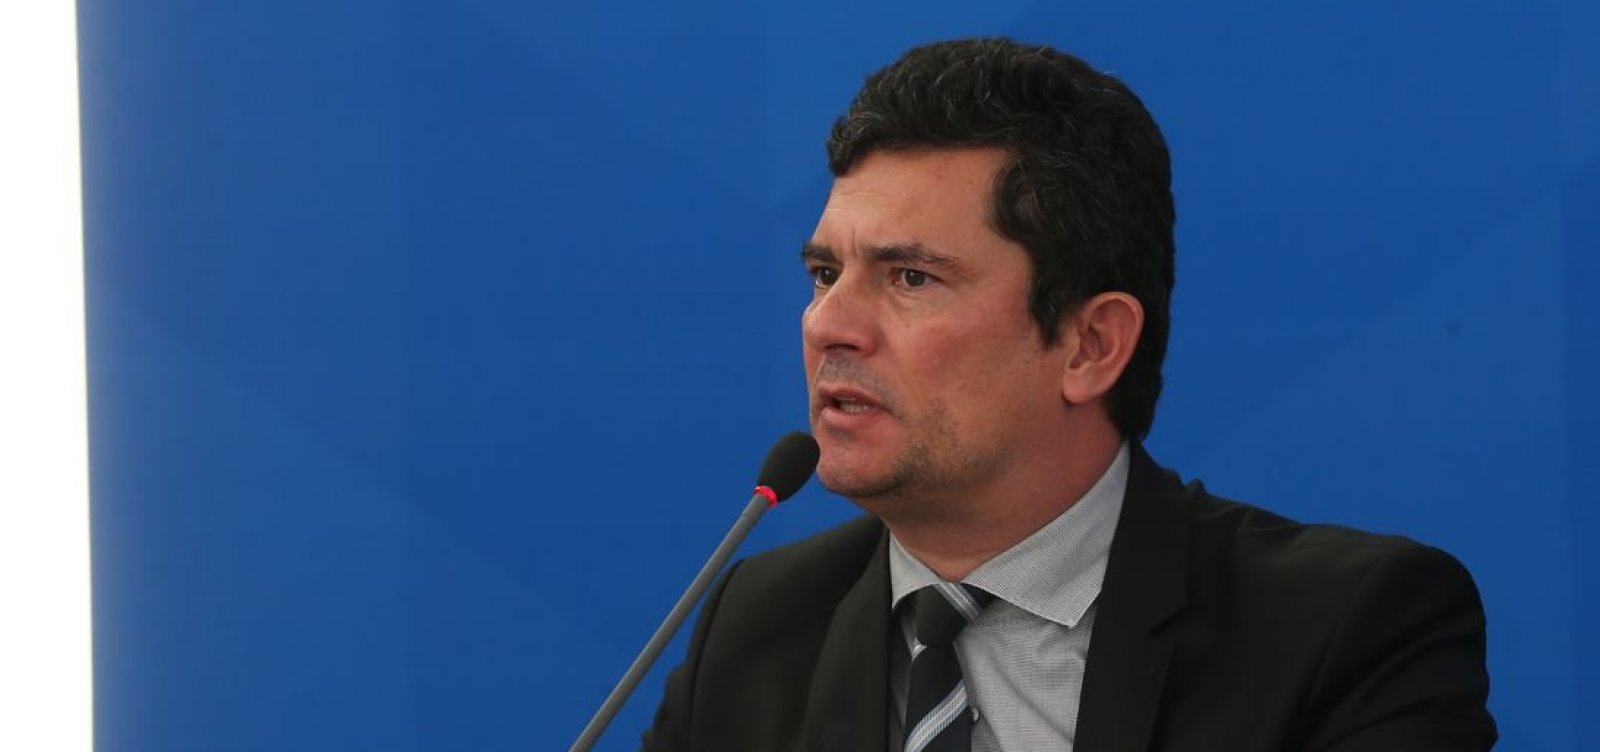 Moro vira réu em ação do PT que pede condenação por prejuízos à Petrobras